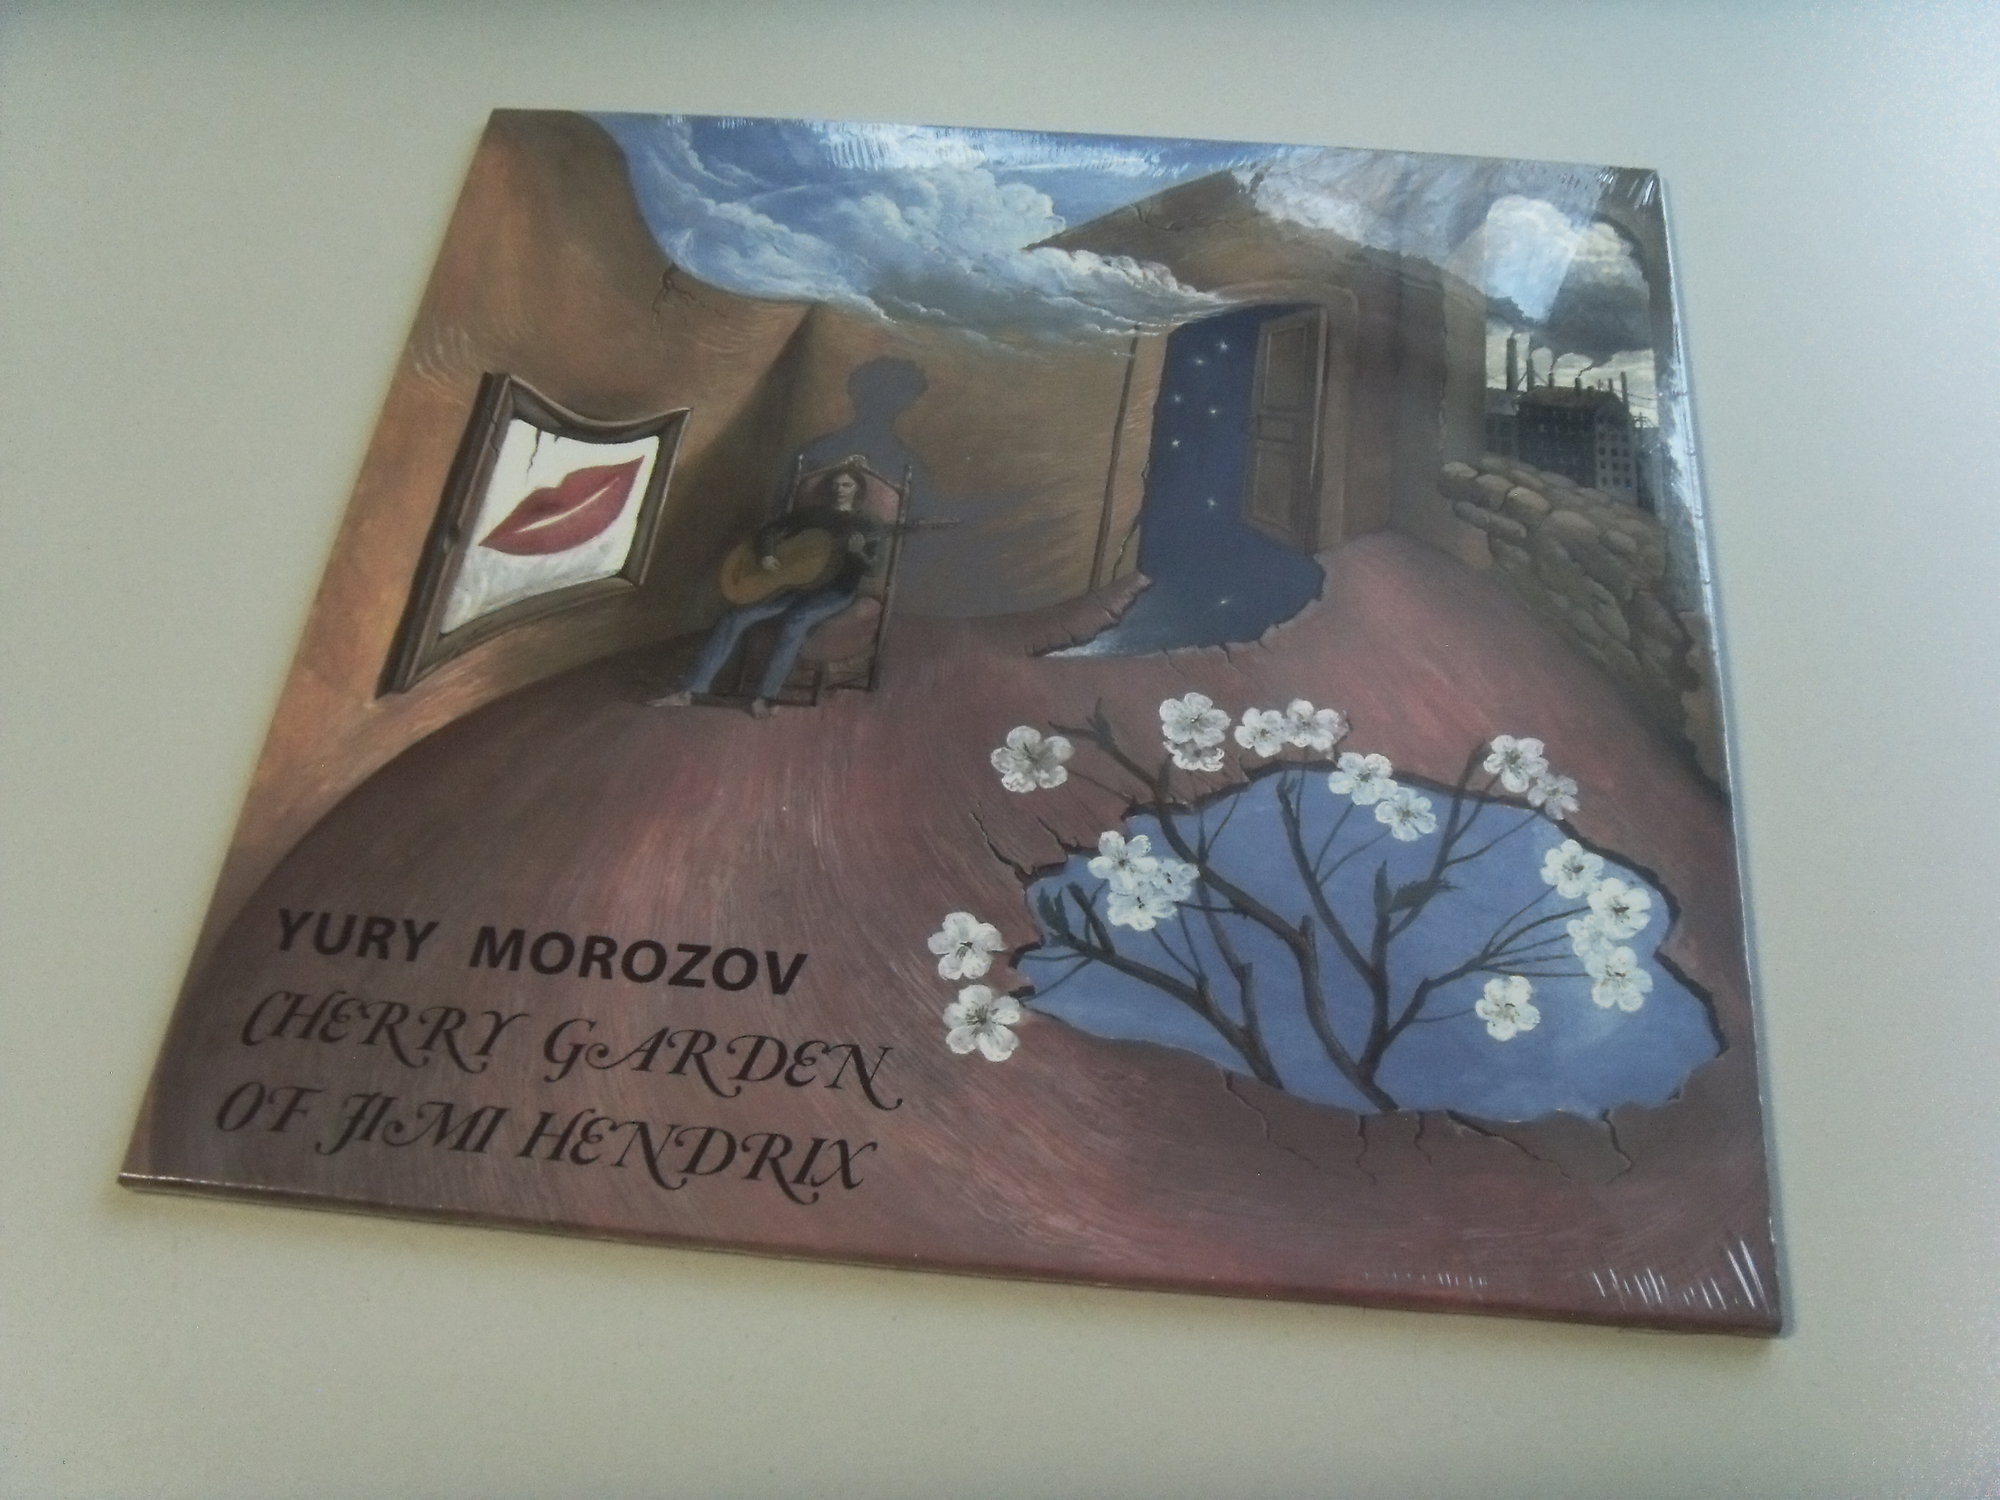 Yury MOROZOV Cherry garden of Jimi Hendrix 2